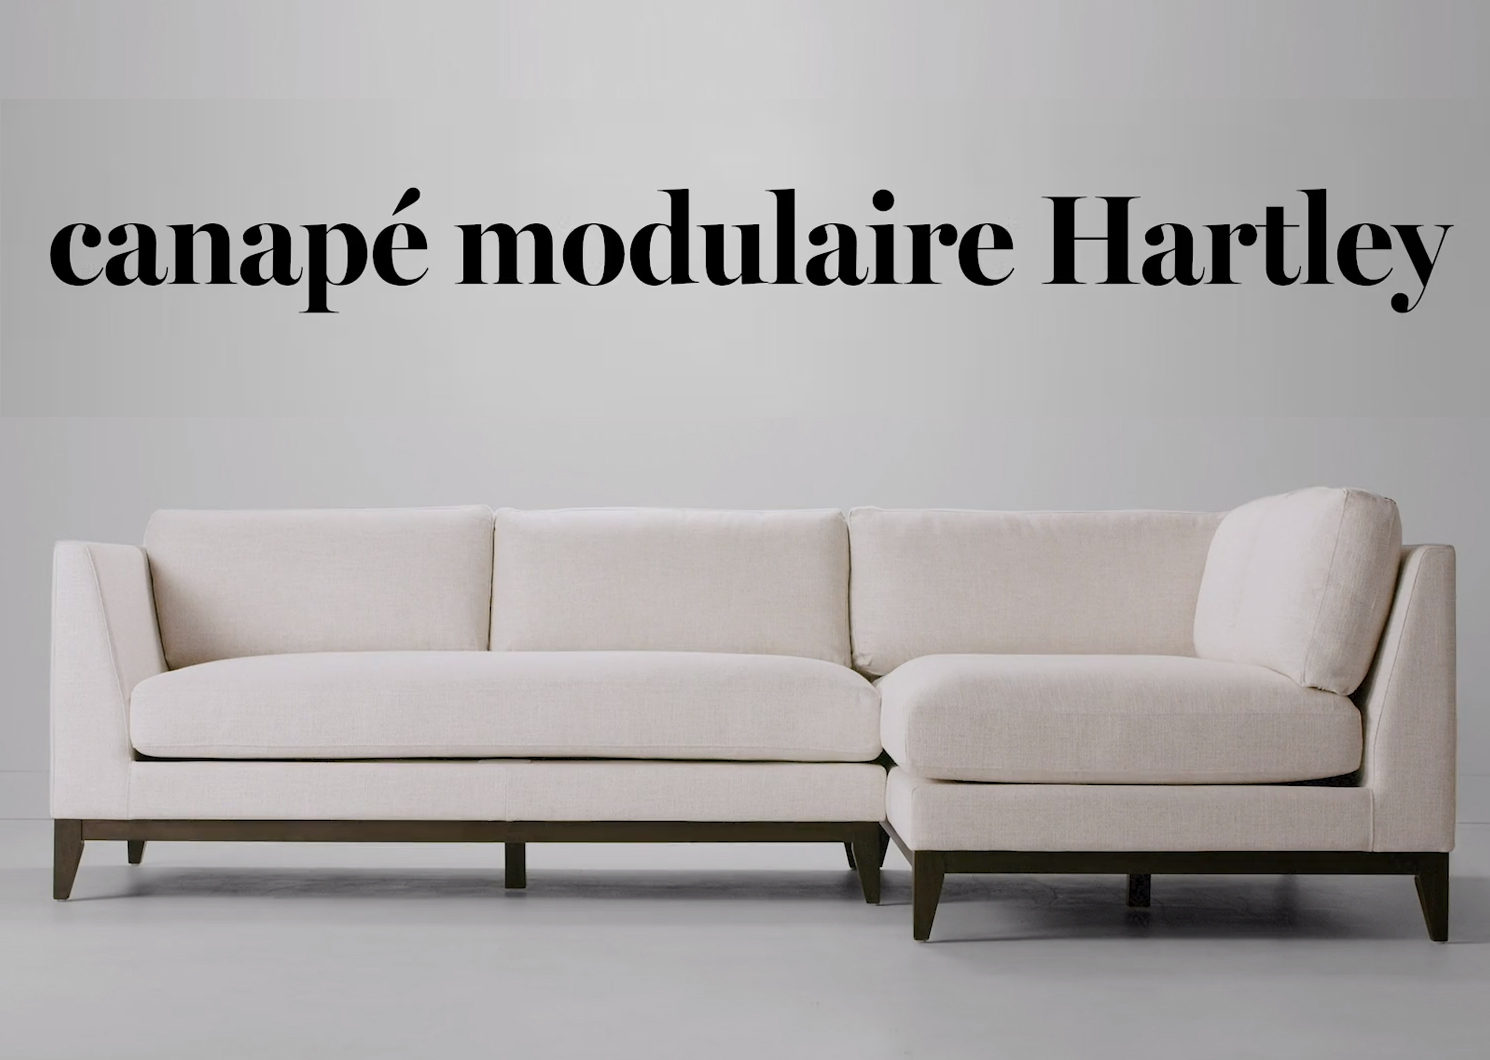 Canapé modulaire Hartley -Zeile lin